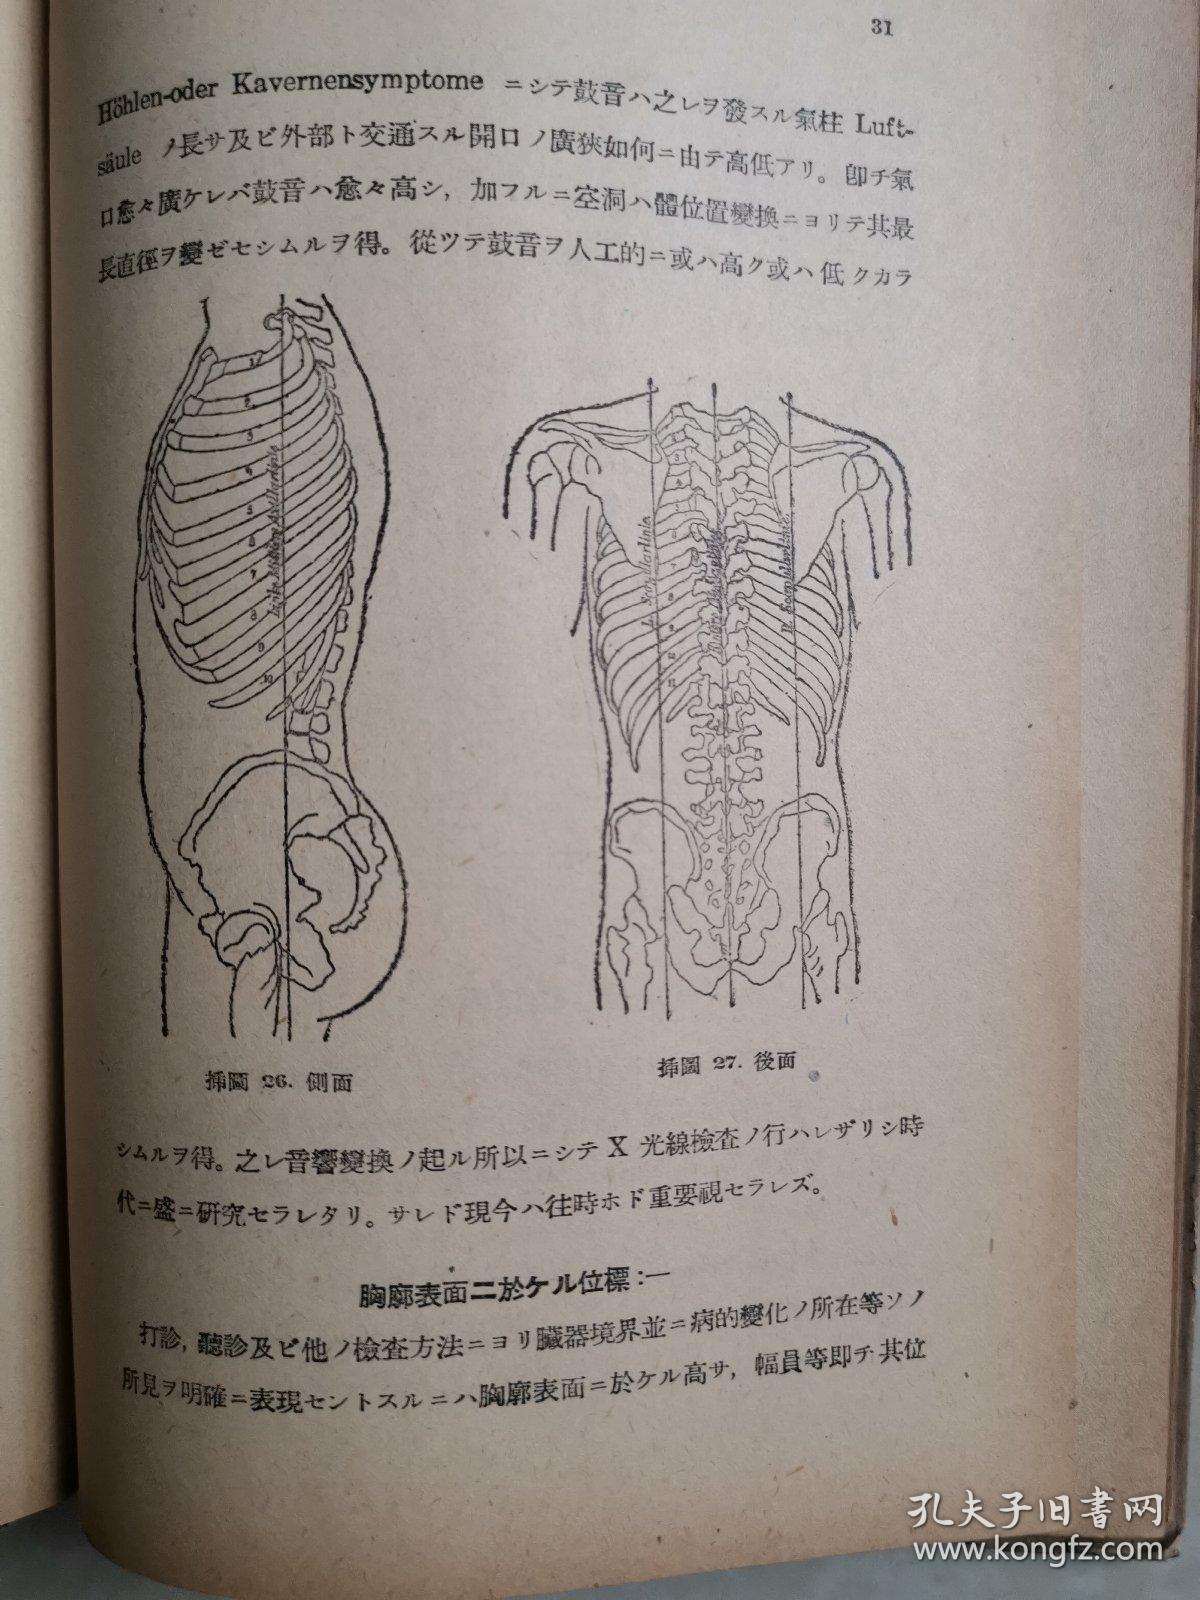 日文原版：打诊と听诊 精装昭和16年 增刷第7版